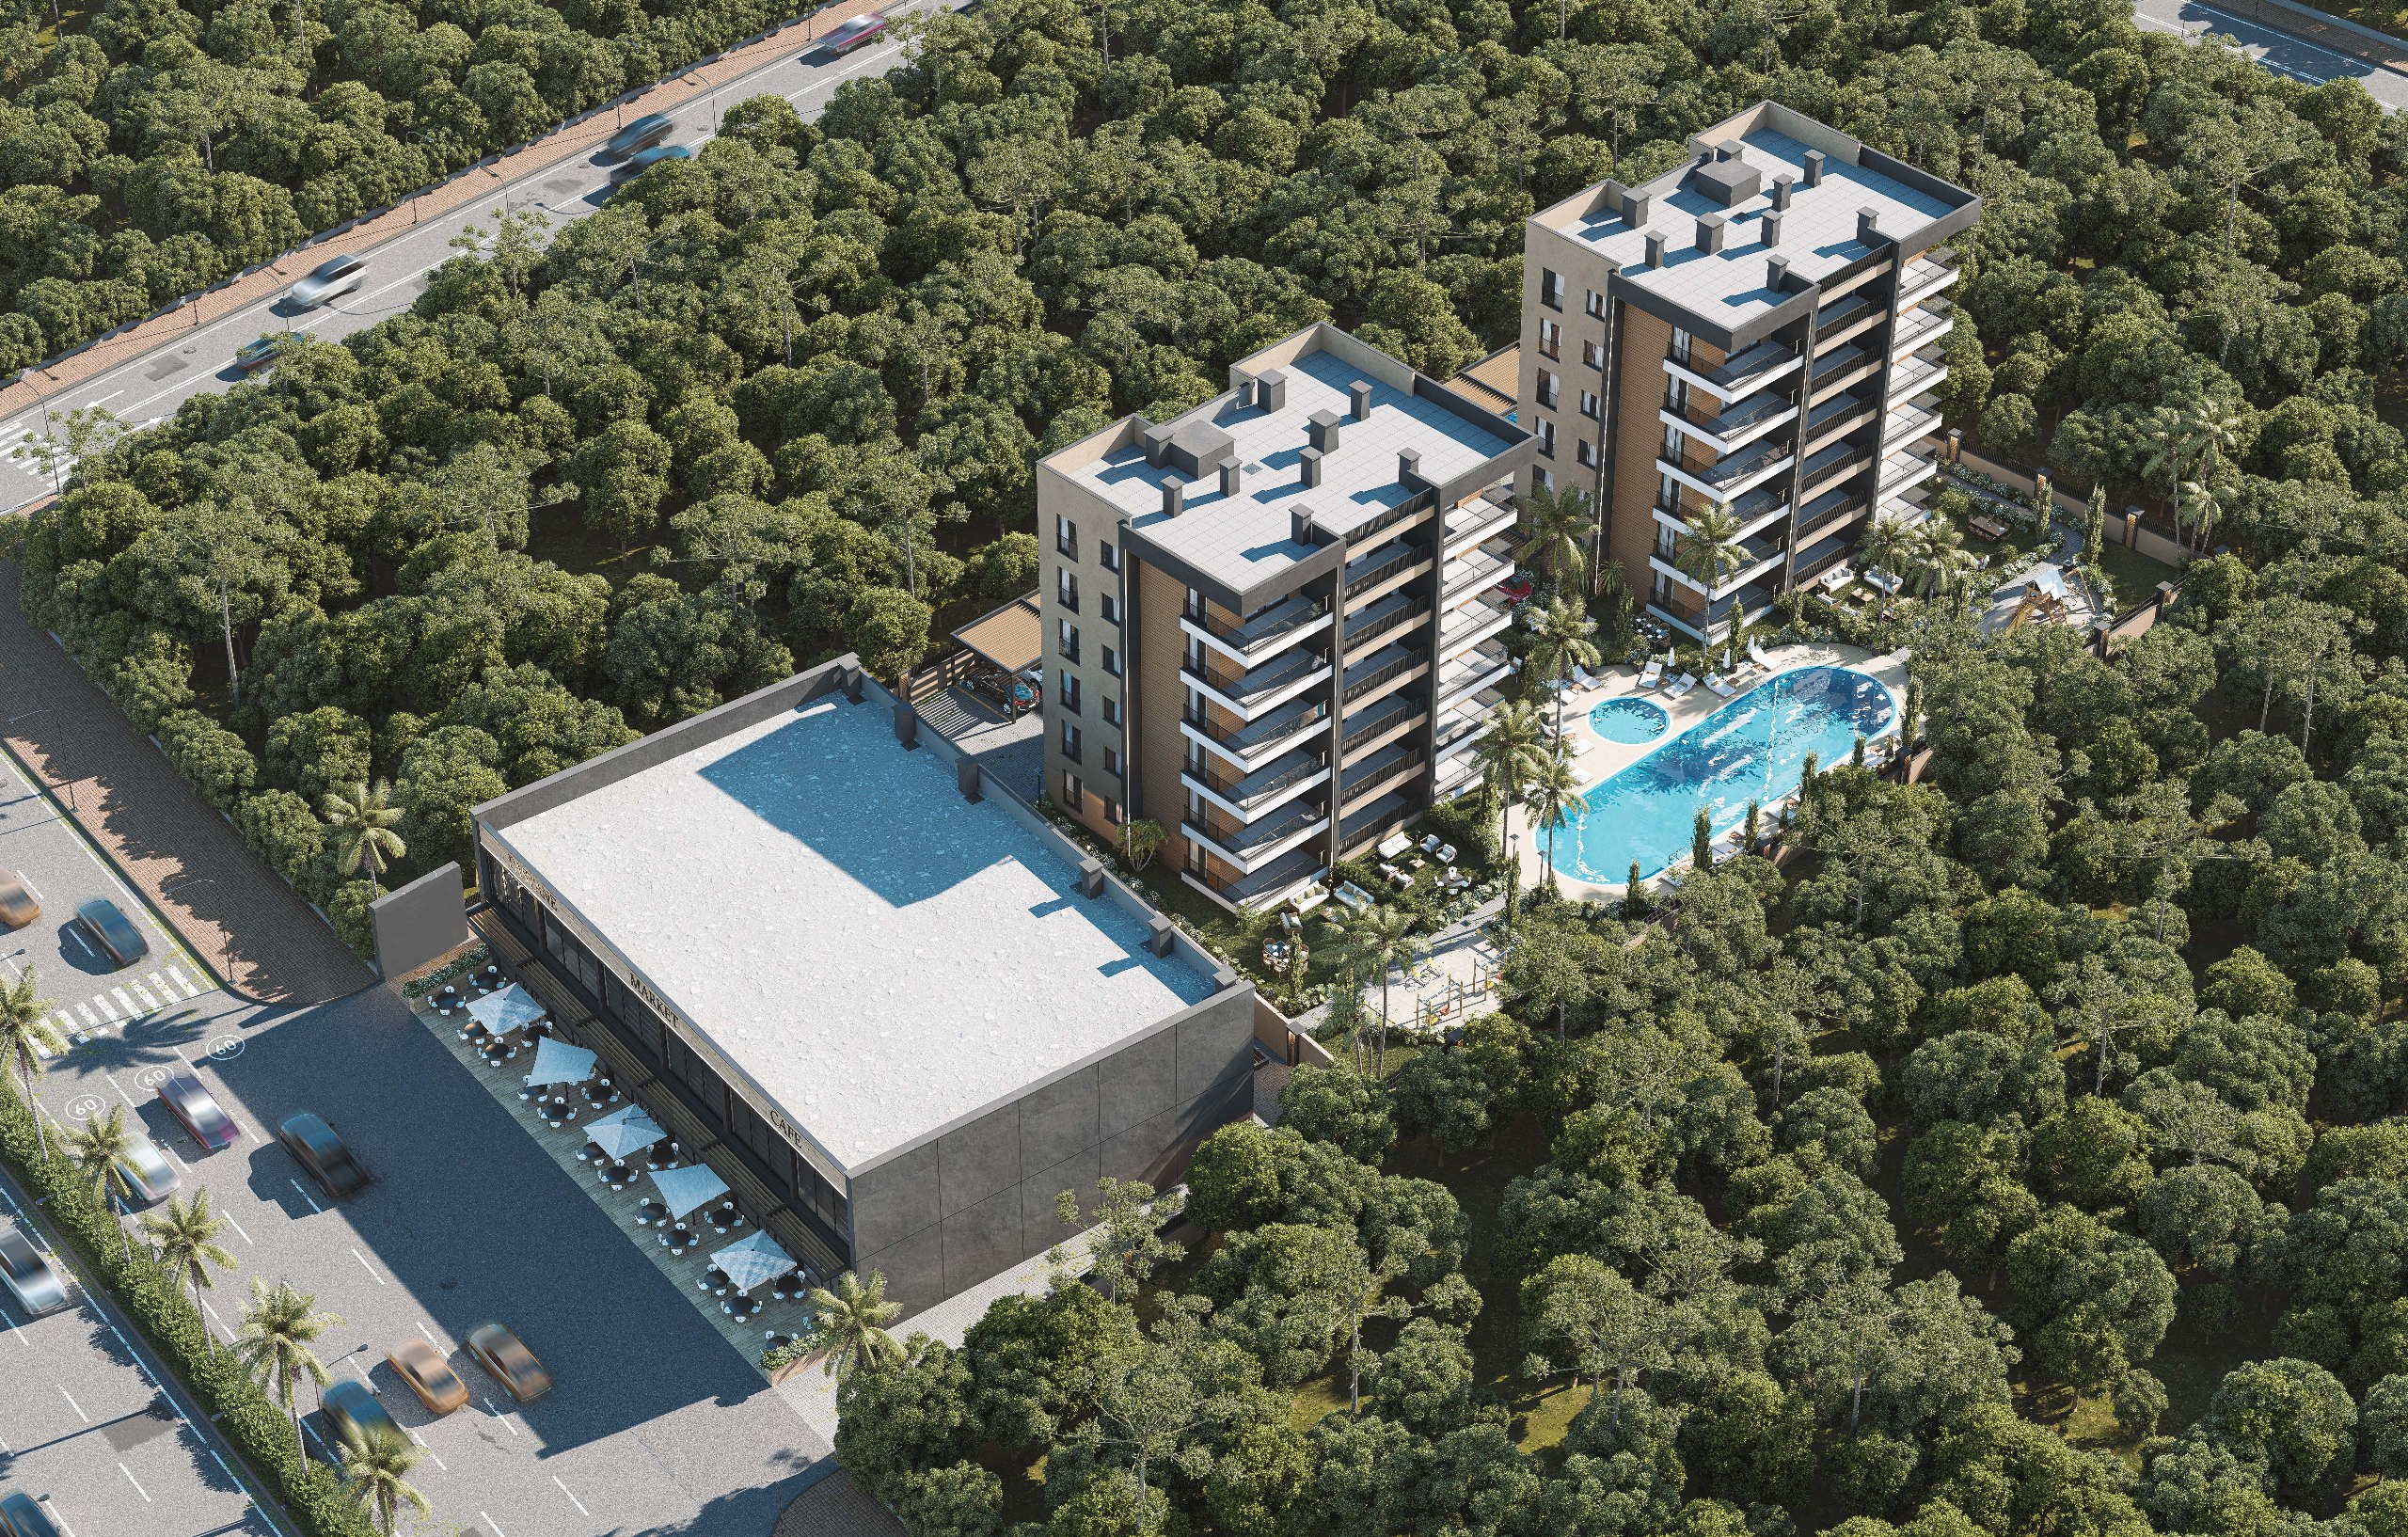 Двухкомнатная квартира 2+1 (94м2) в новом ЖК. Топовая Турция; сталось 4 квартиры, чень выгодная недвижимость.